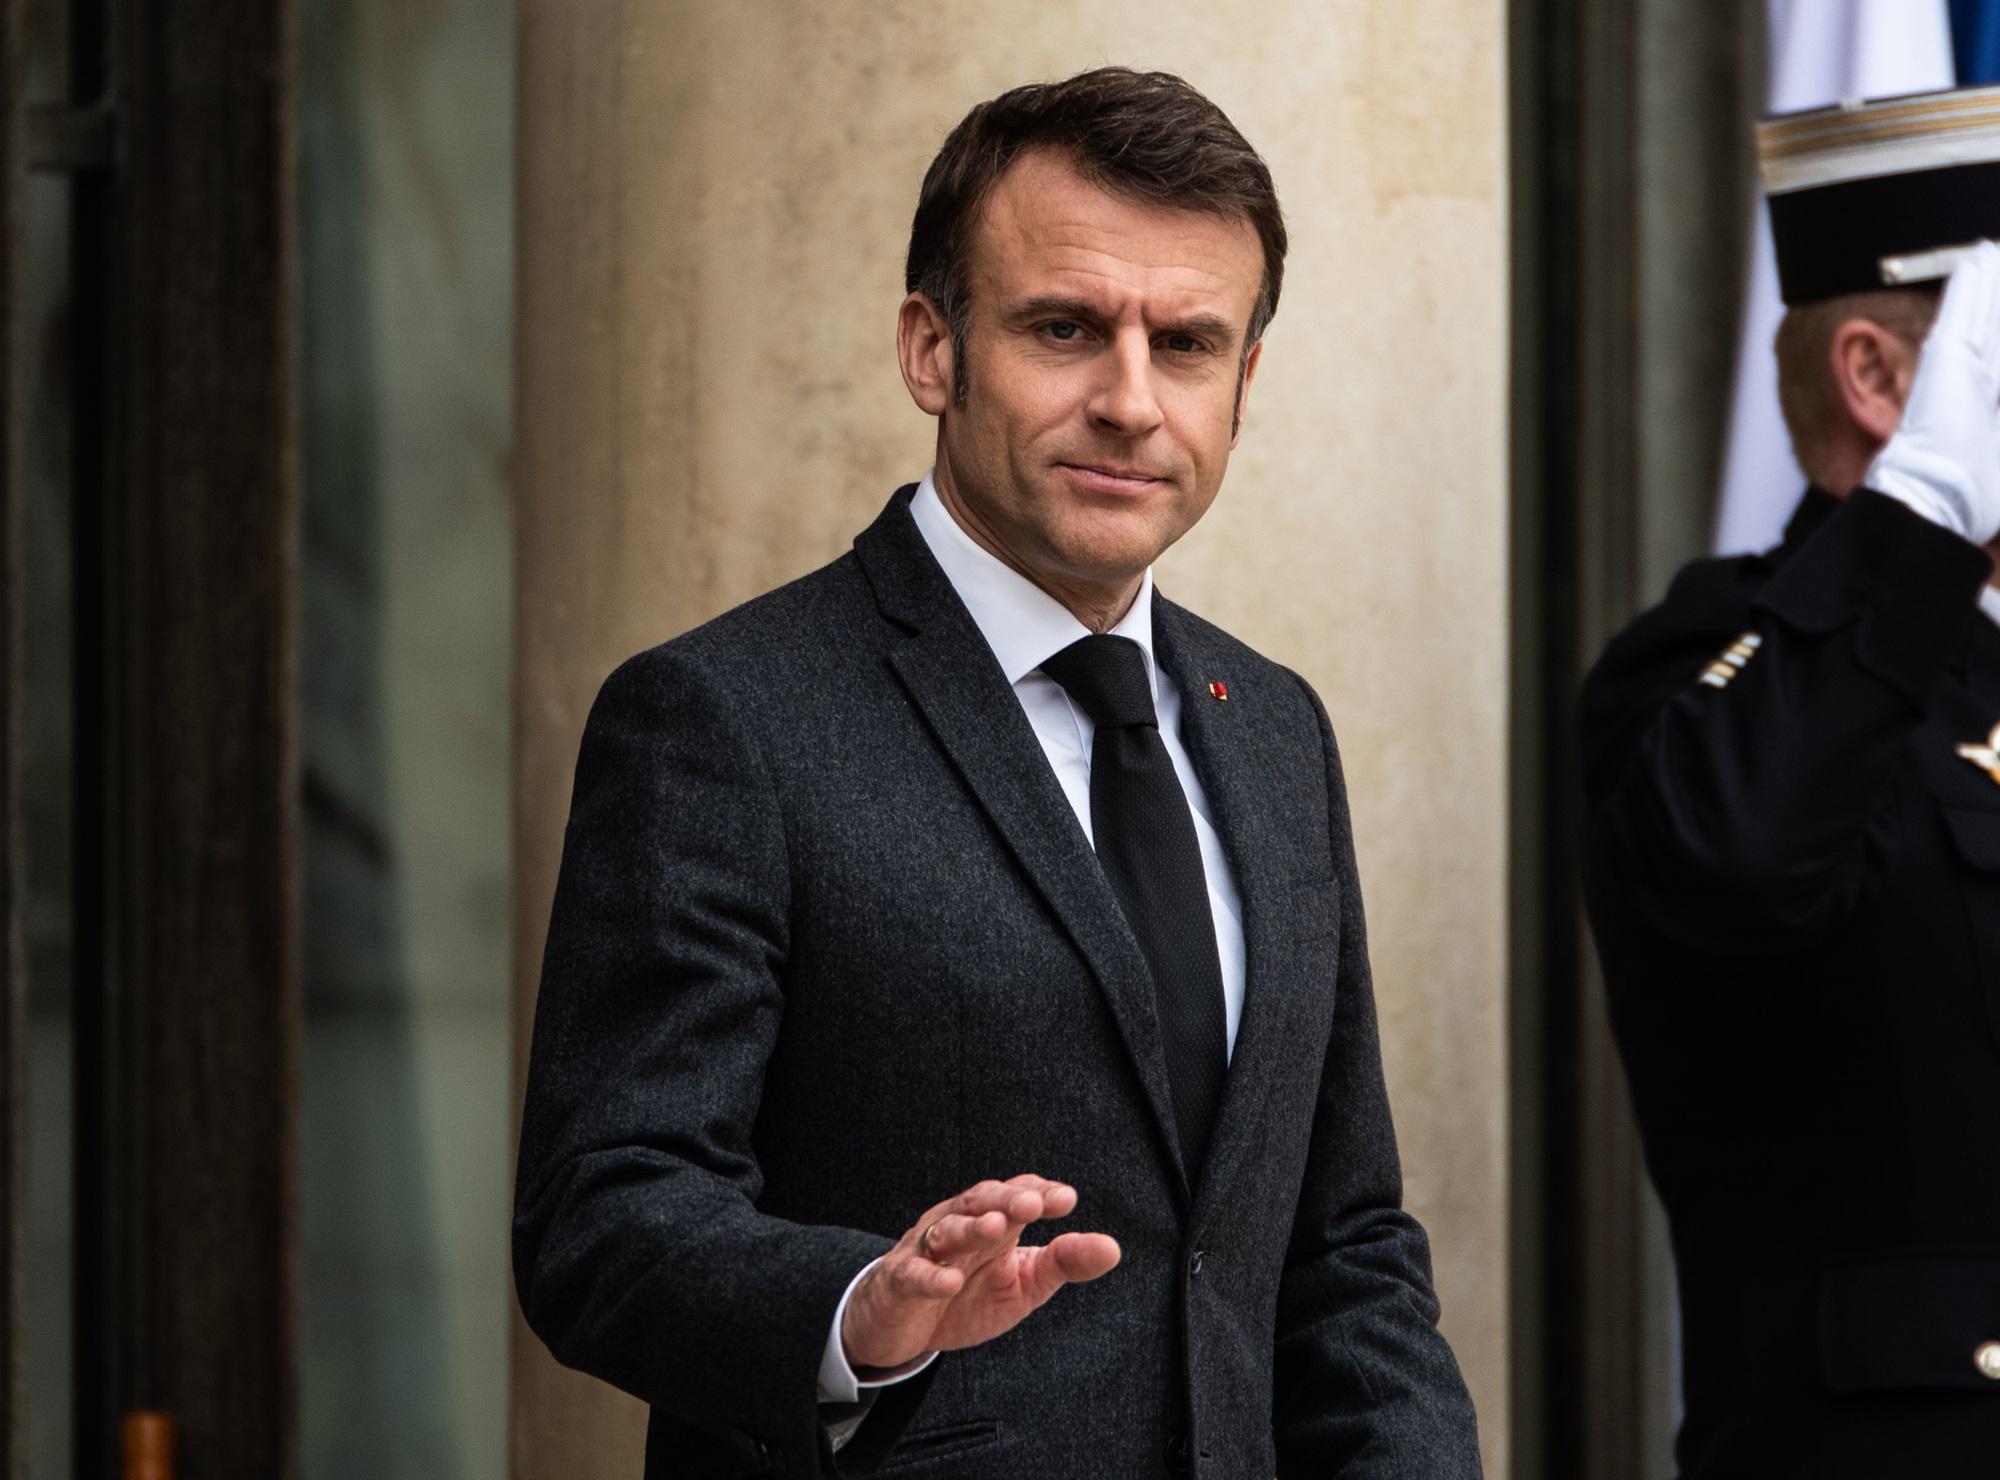 Elezioni Francia - Macron: Nessuno ha vinto - nuovo premier dopo compromesso tra forze